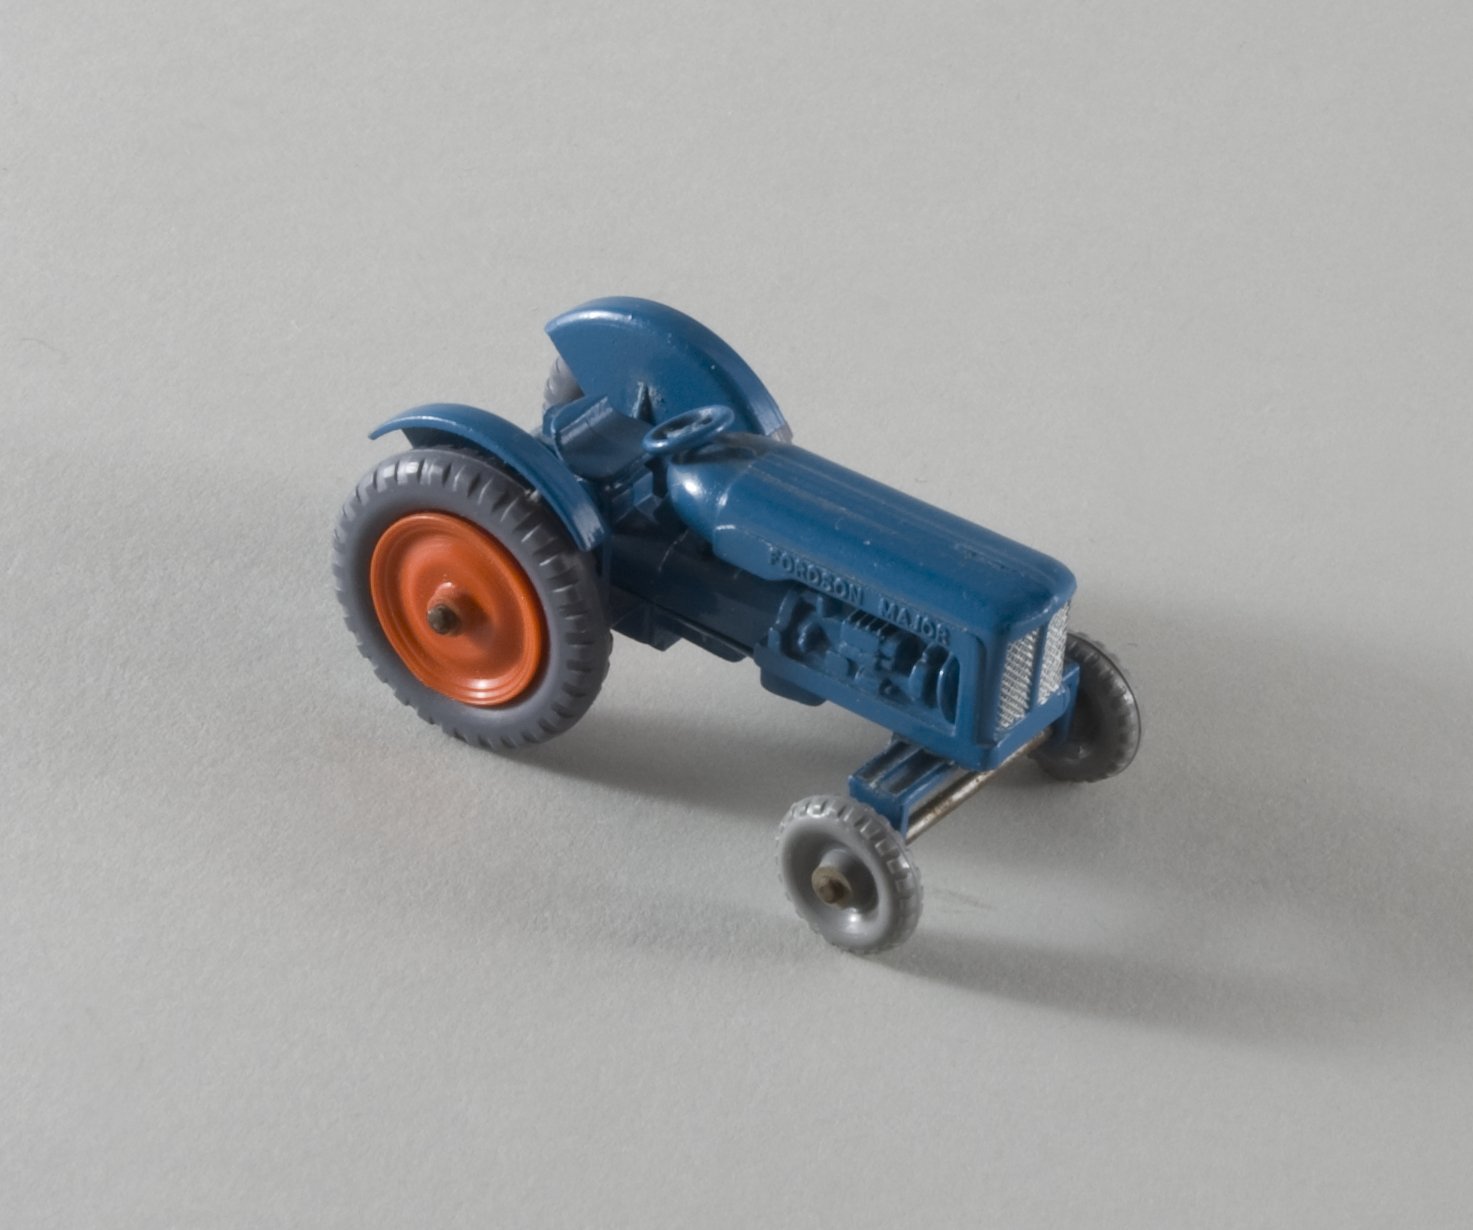 Spielzeugmodell: Traktor "Fordson Major" (Stiftung Domäne Dahlem - Landgut und Museum, Weiternutzung nur mit Genehmigung des Museums CC BY-NC-SA)